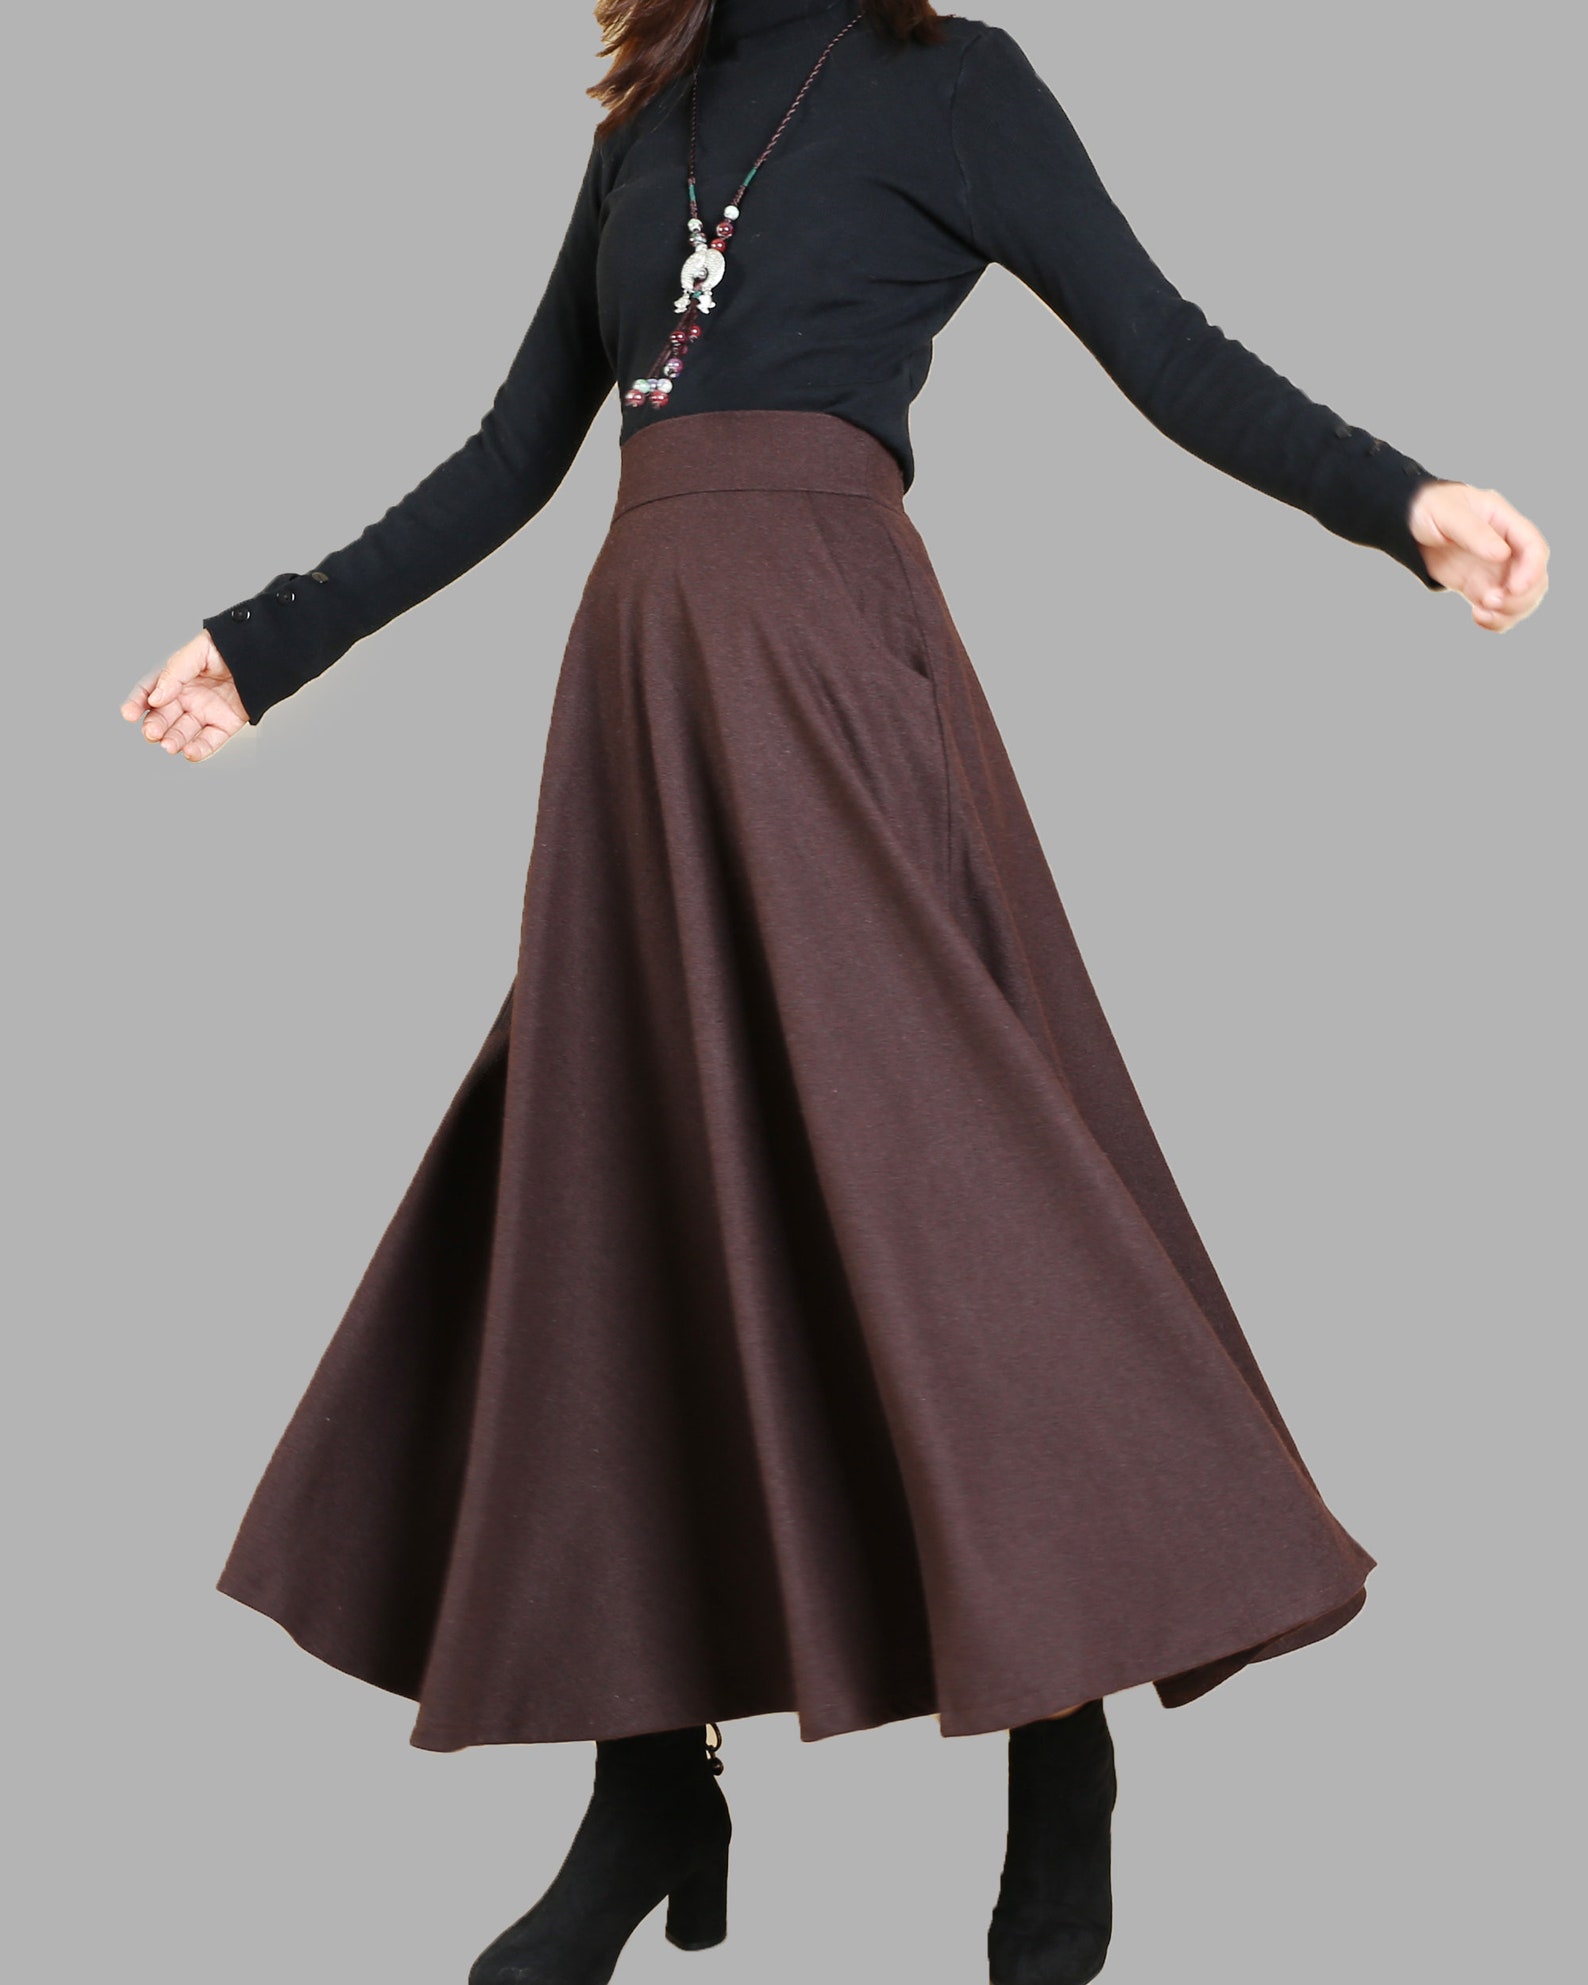 Winter Skirt Wool Skirt Dark Green Skirt Long Skirt | Etsy